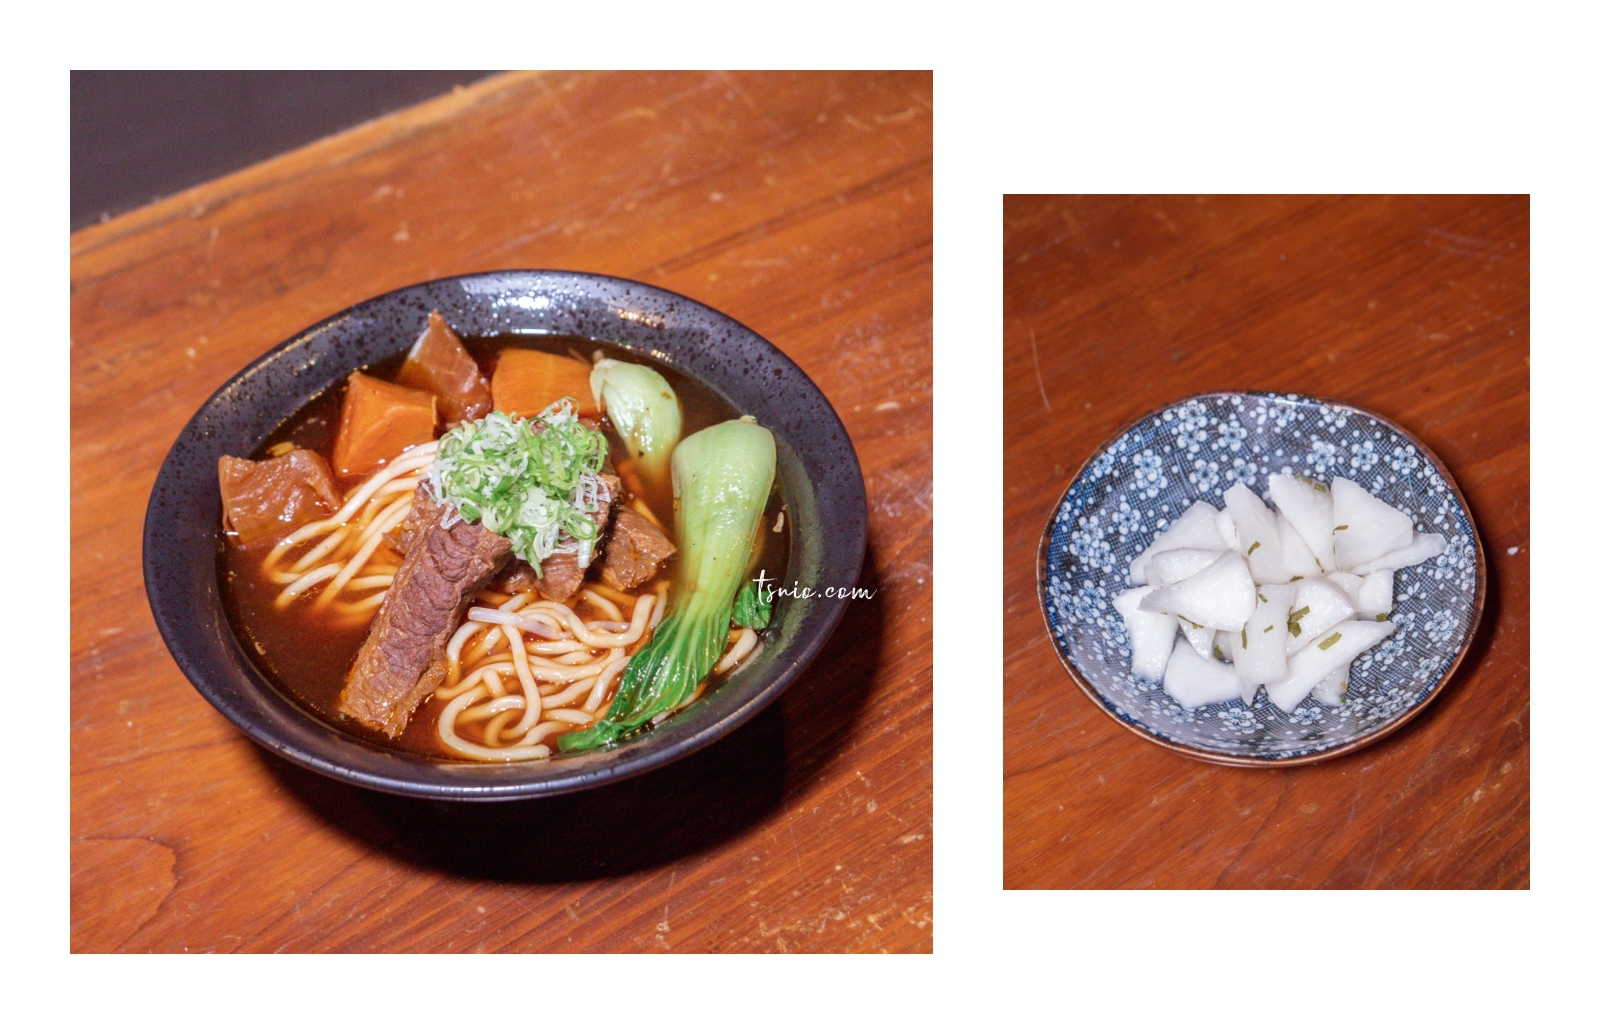 台北餐酒館 MURA Lunch & Dinner 大口暢飲享受海鮮料理 最自在的放鬆時刻